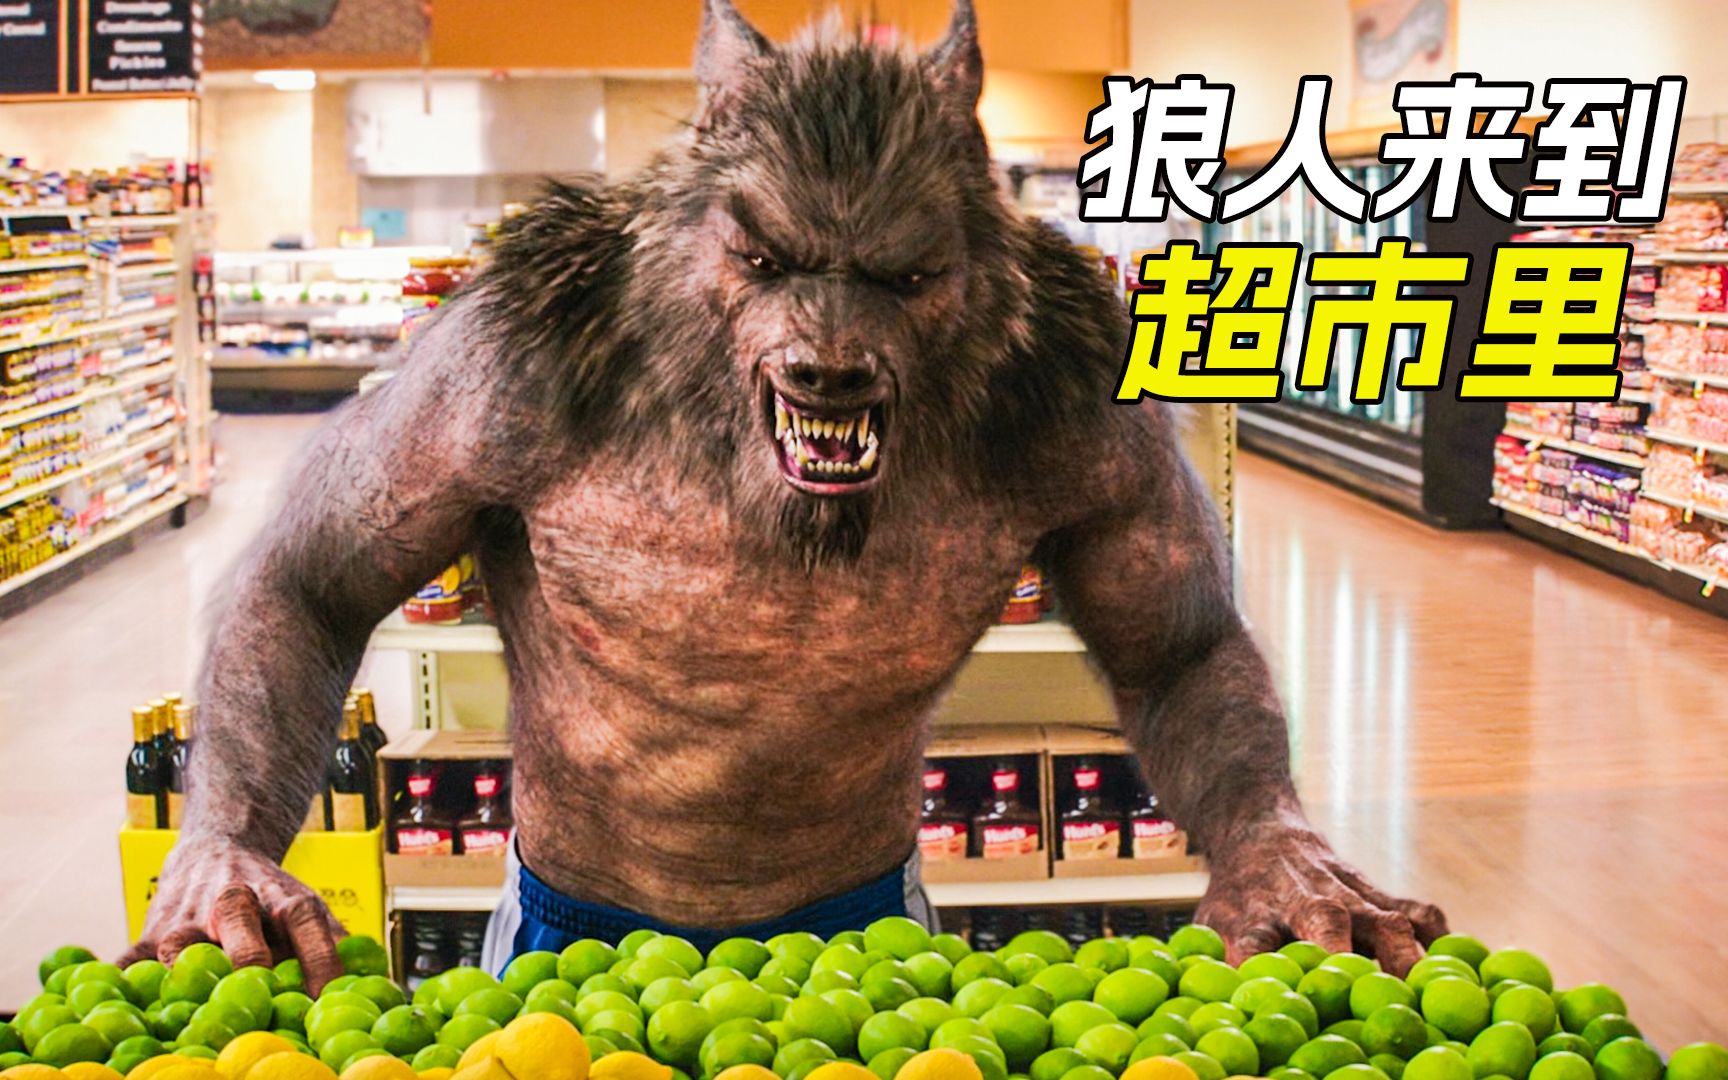 小说里的怪物全部复活，狼人闯进超市里